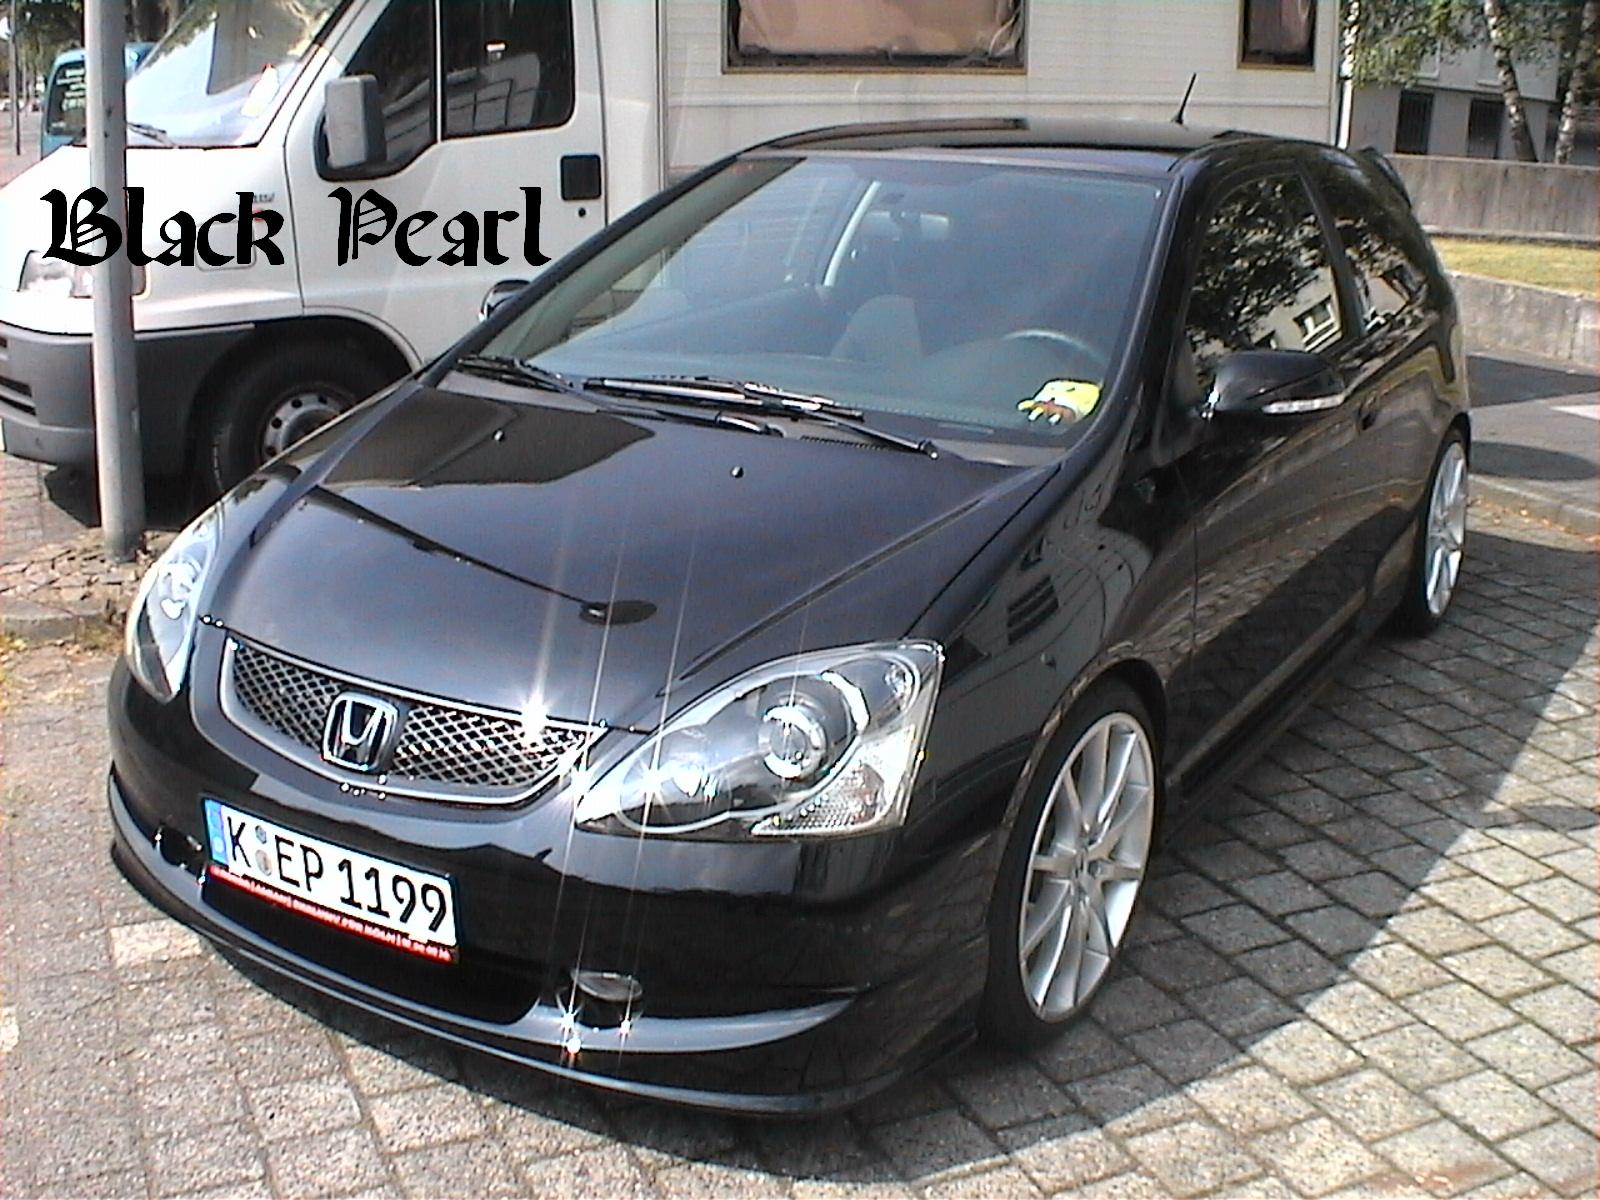 Black Pearl1.JPG